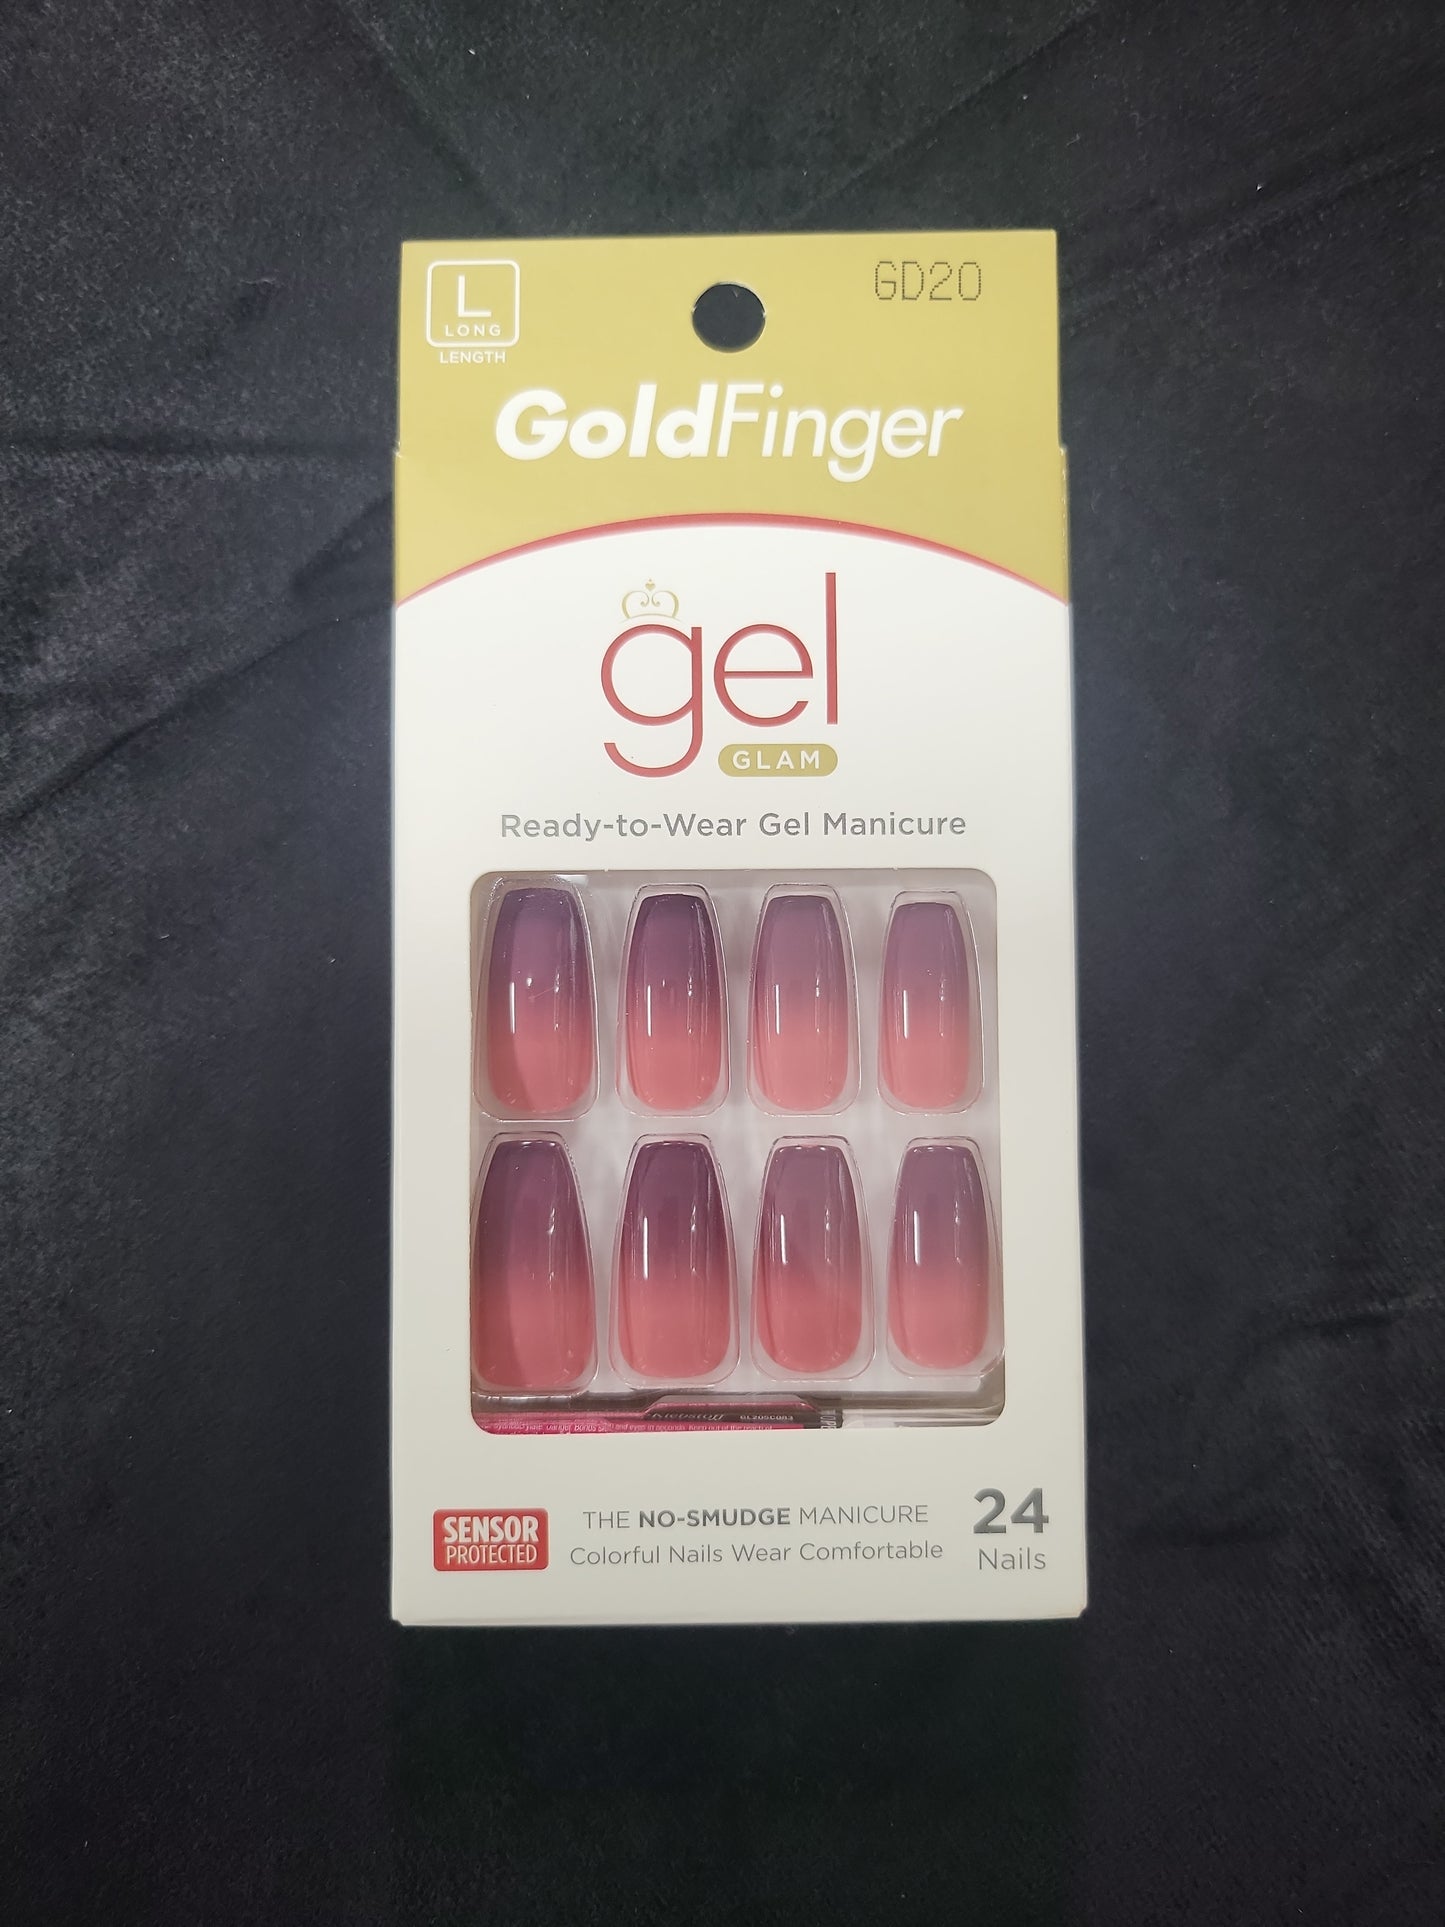 GoldFinger Gel Glam GD20